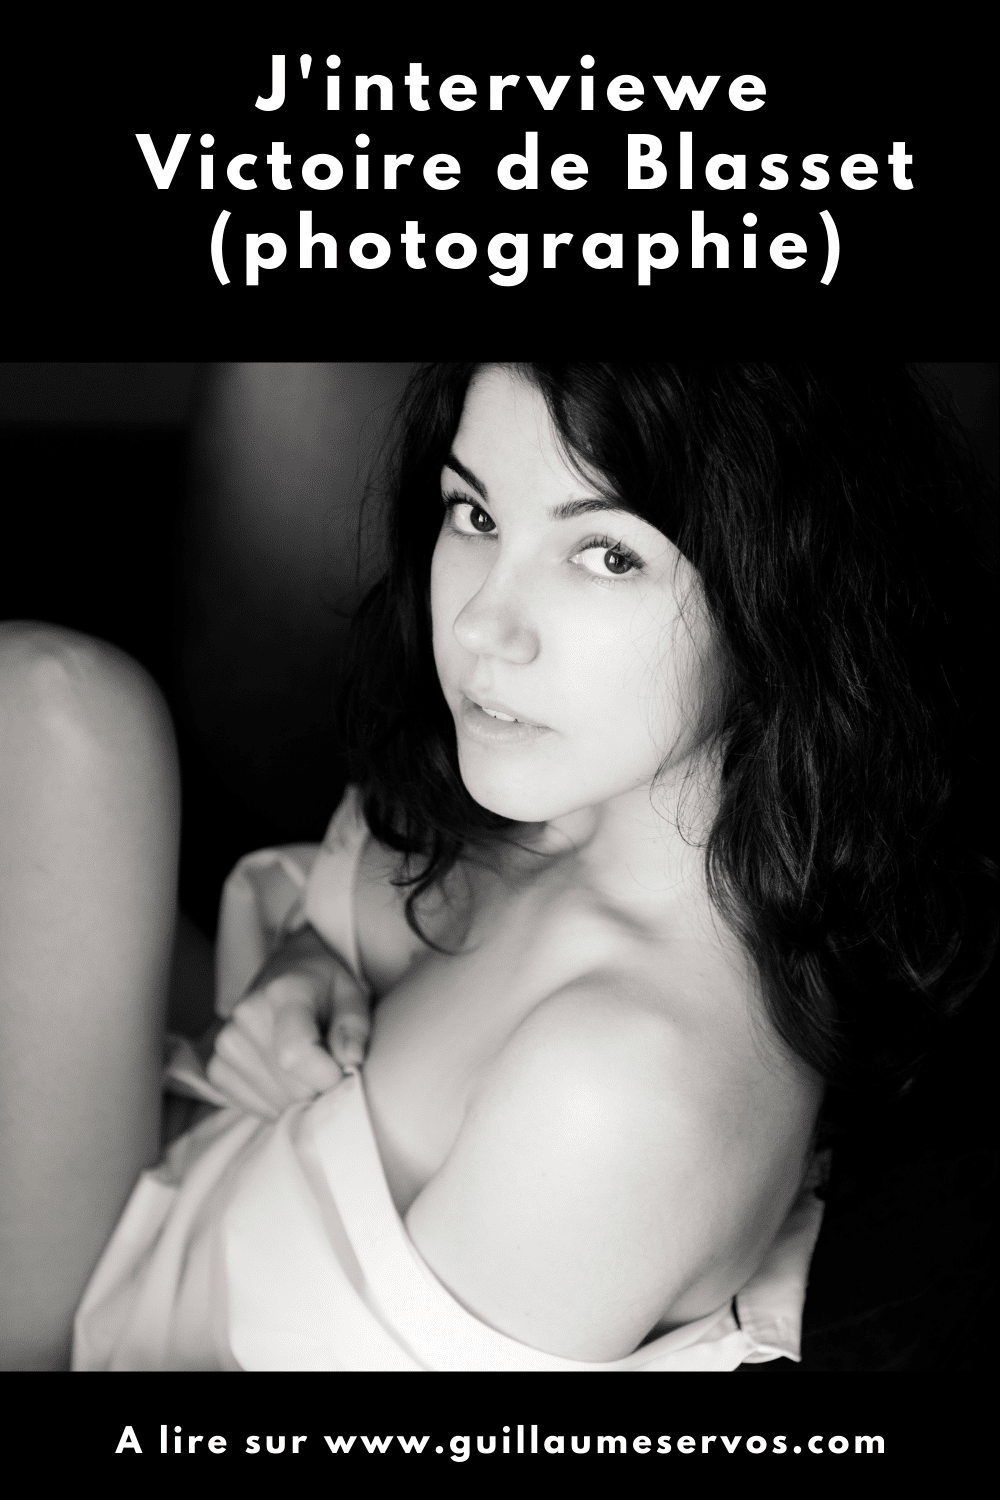 Découvre mon interview à contre-courant avec Victoire de Blasset, photographe et modèle. Son rapport à la photographie, aux réseaux sociaux, au voyage et sa carte blanche.